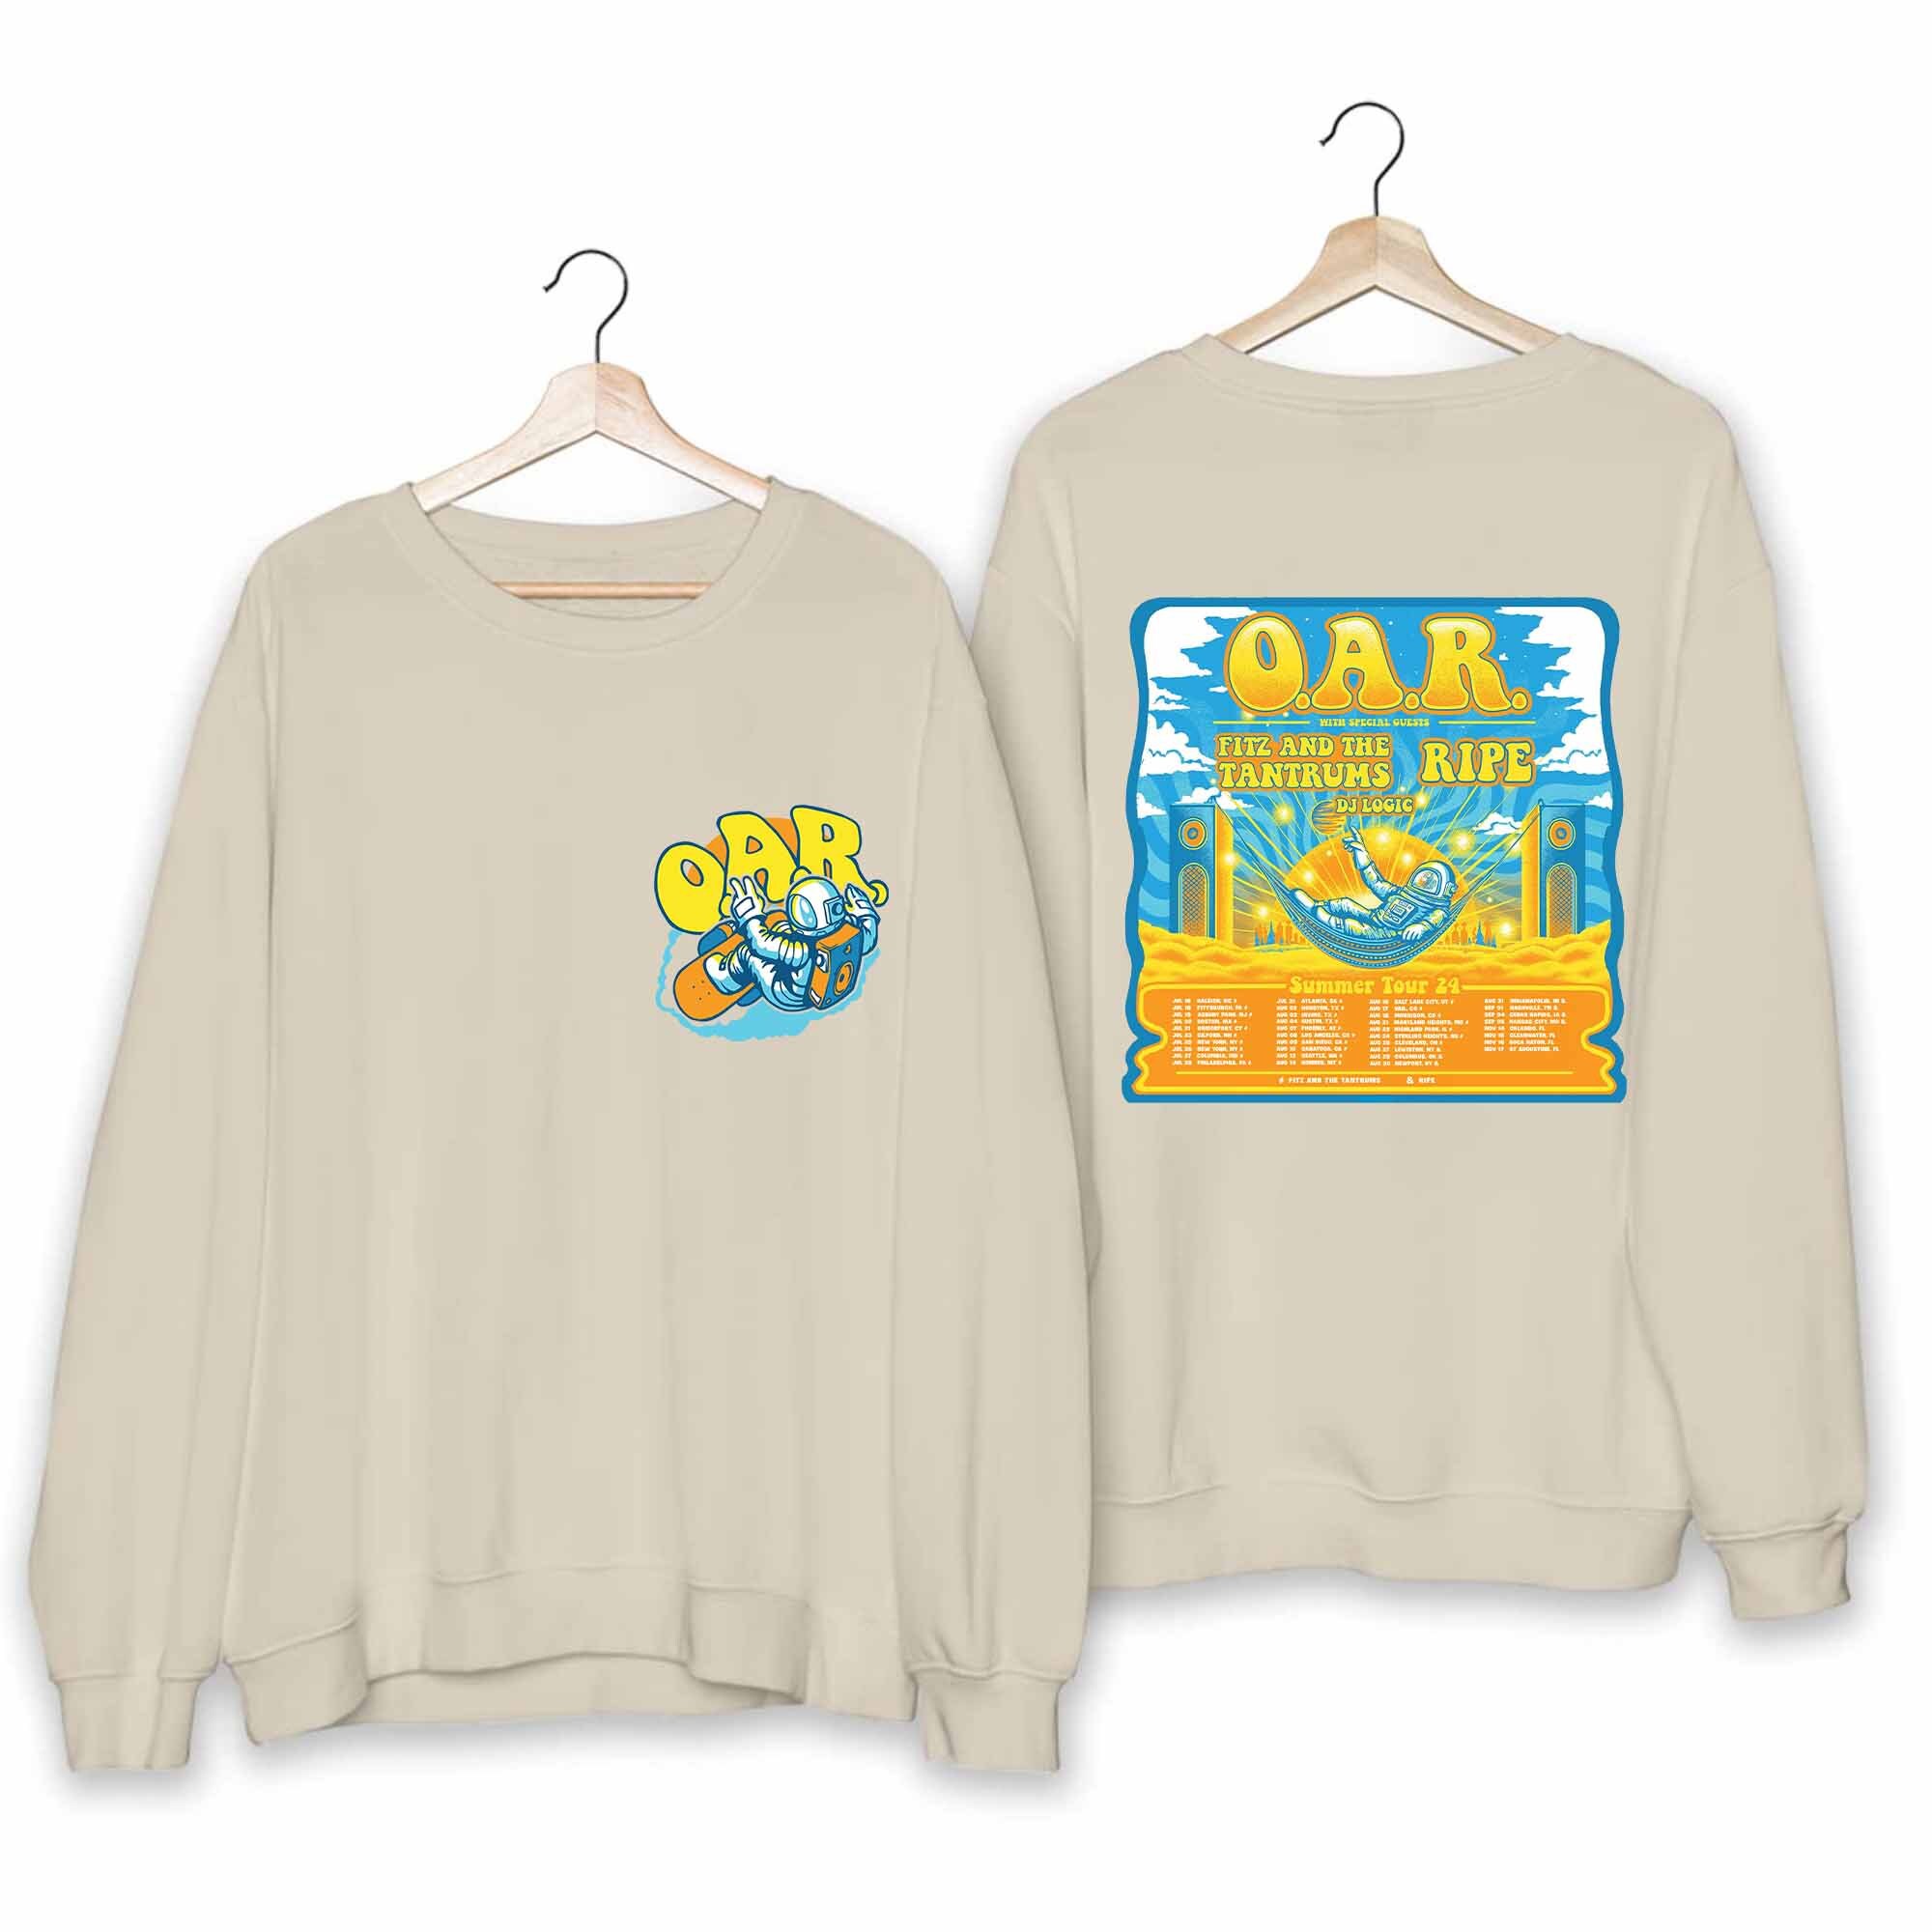 O.A.R Summer Tour 24 Shirt, O.A.R Band Fan Shirt